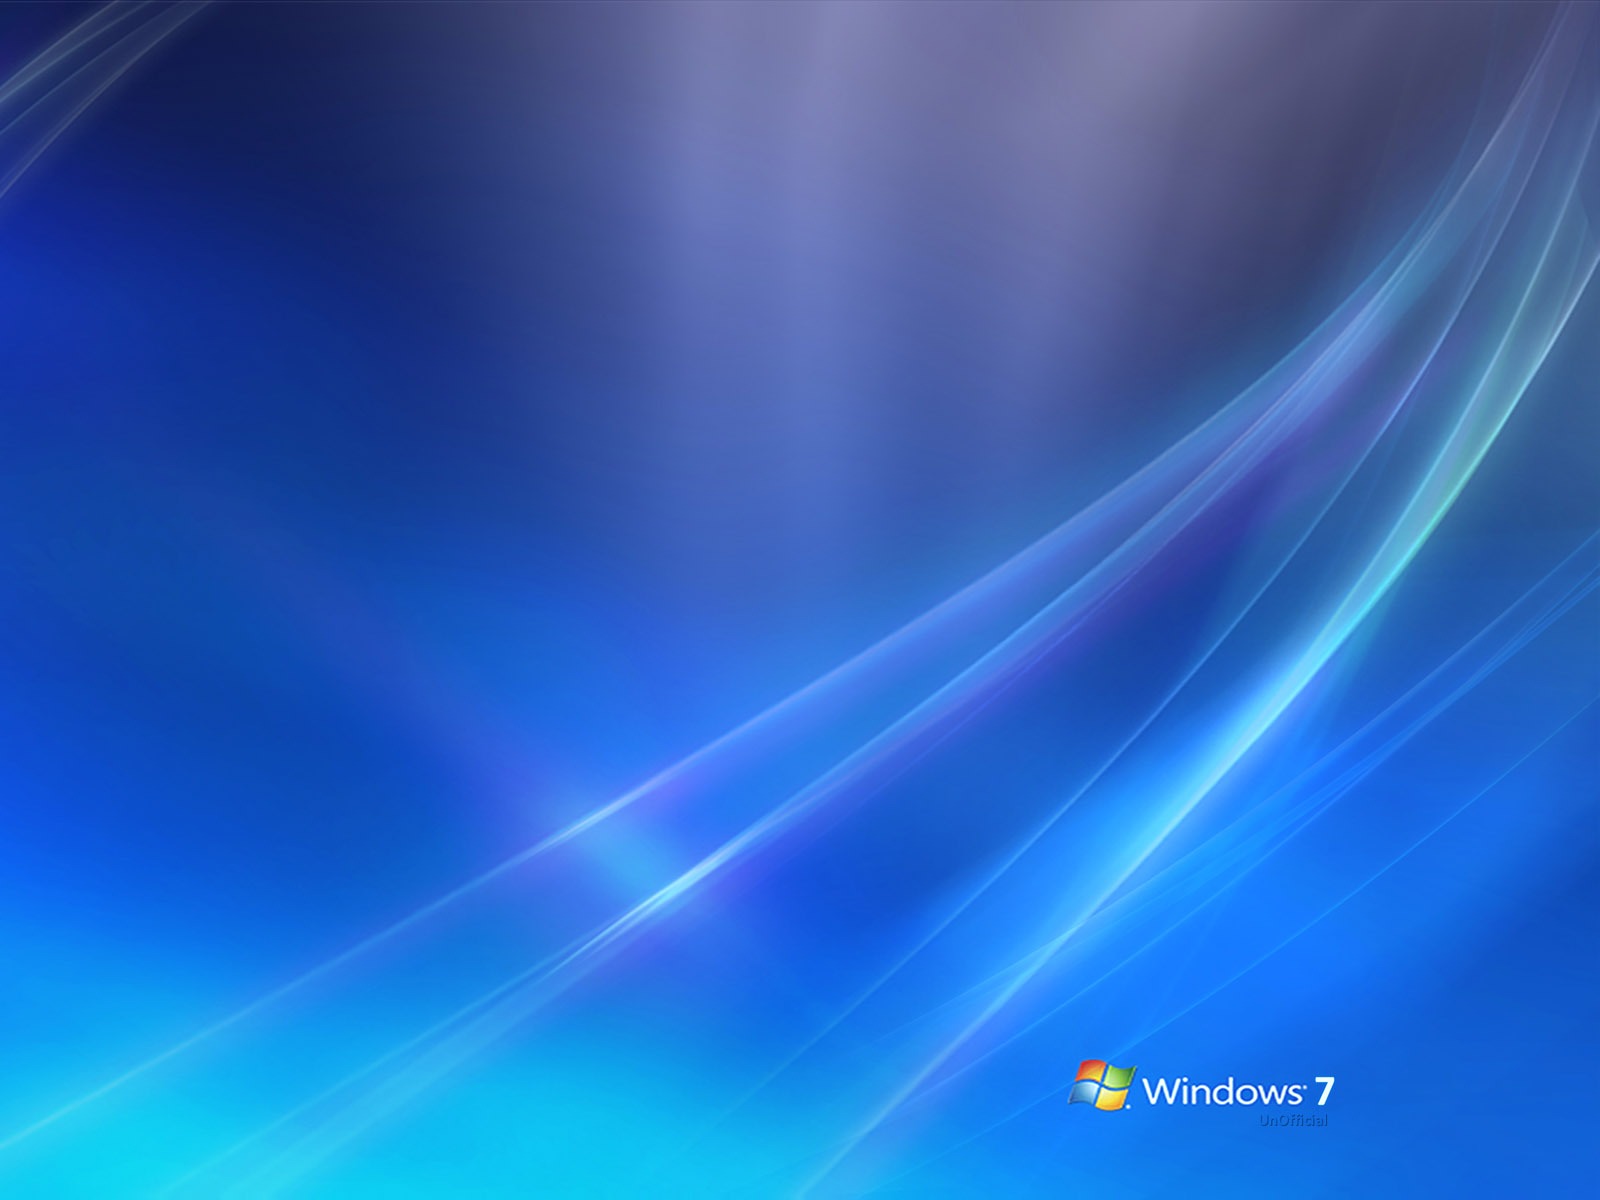 Windows7 theme wallpaper (2) #13 - 1600x1200